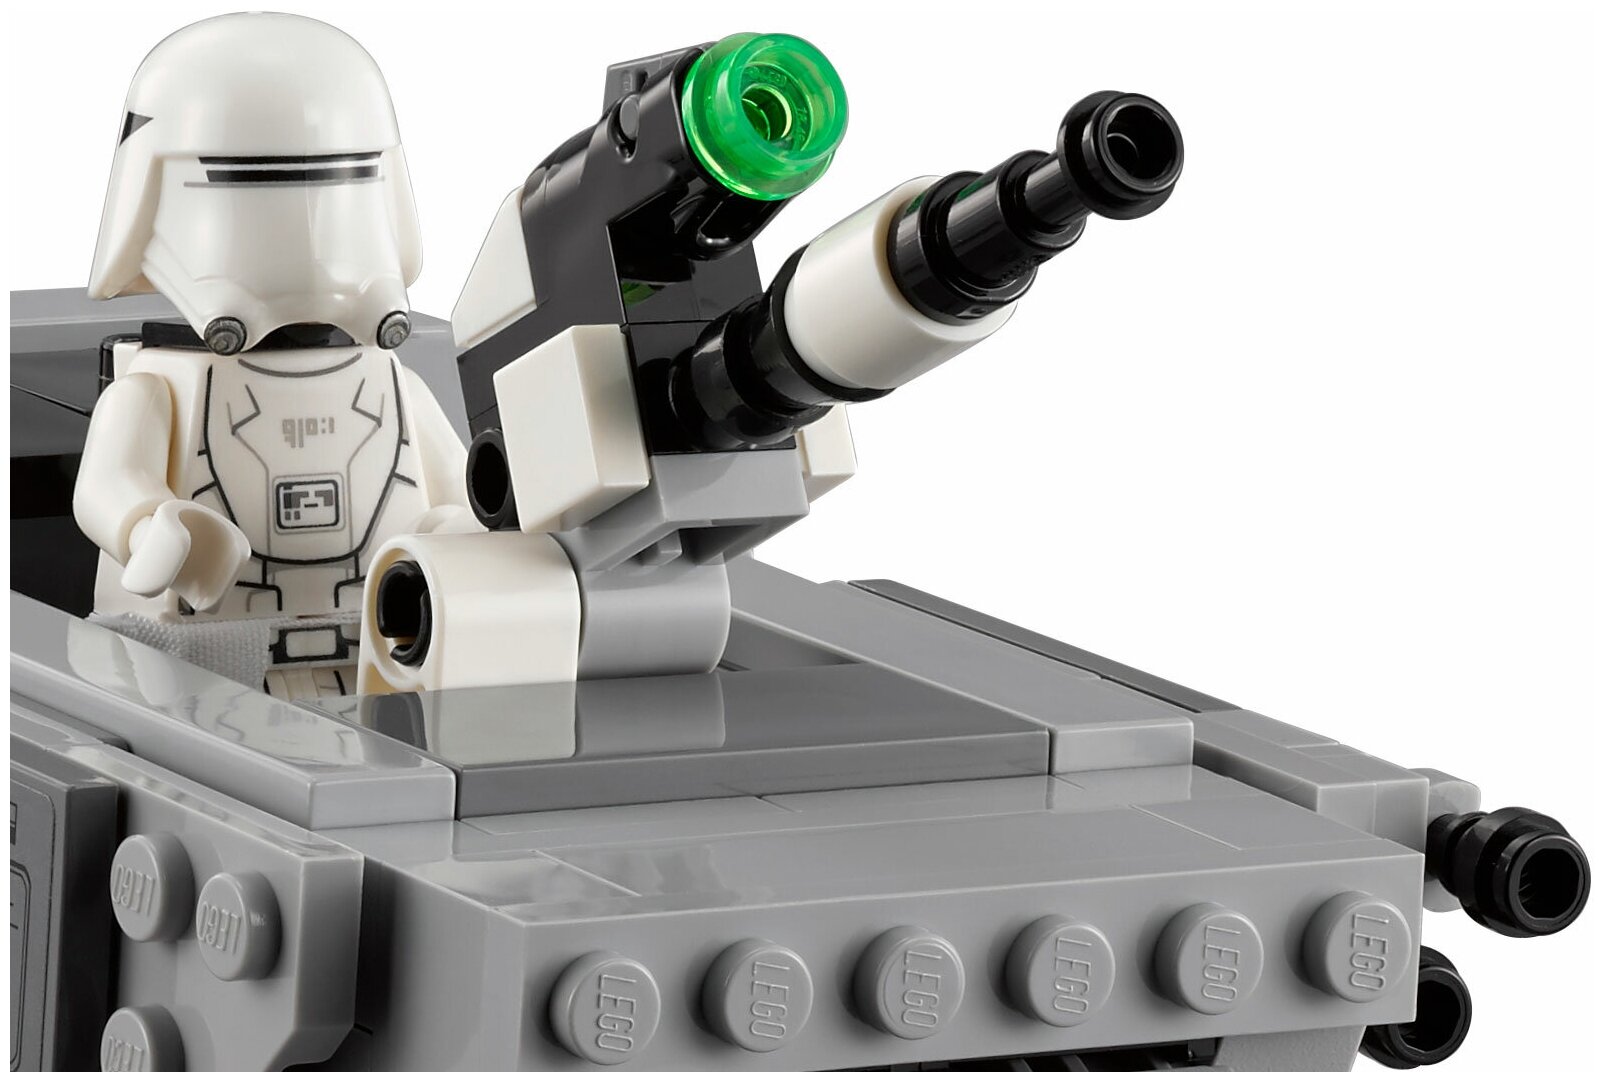 Конструктор LEGO Star Wars 75100 Снежный спидер Первого Ордена